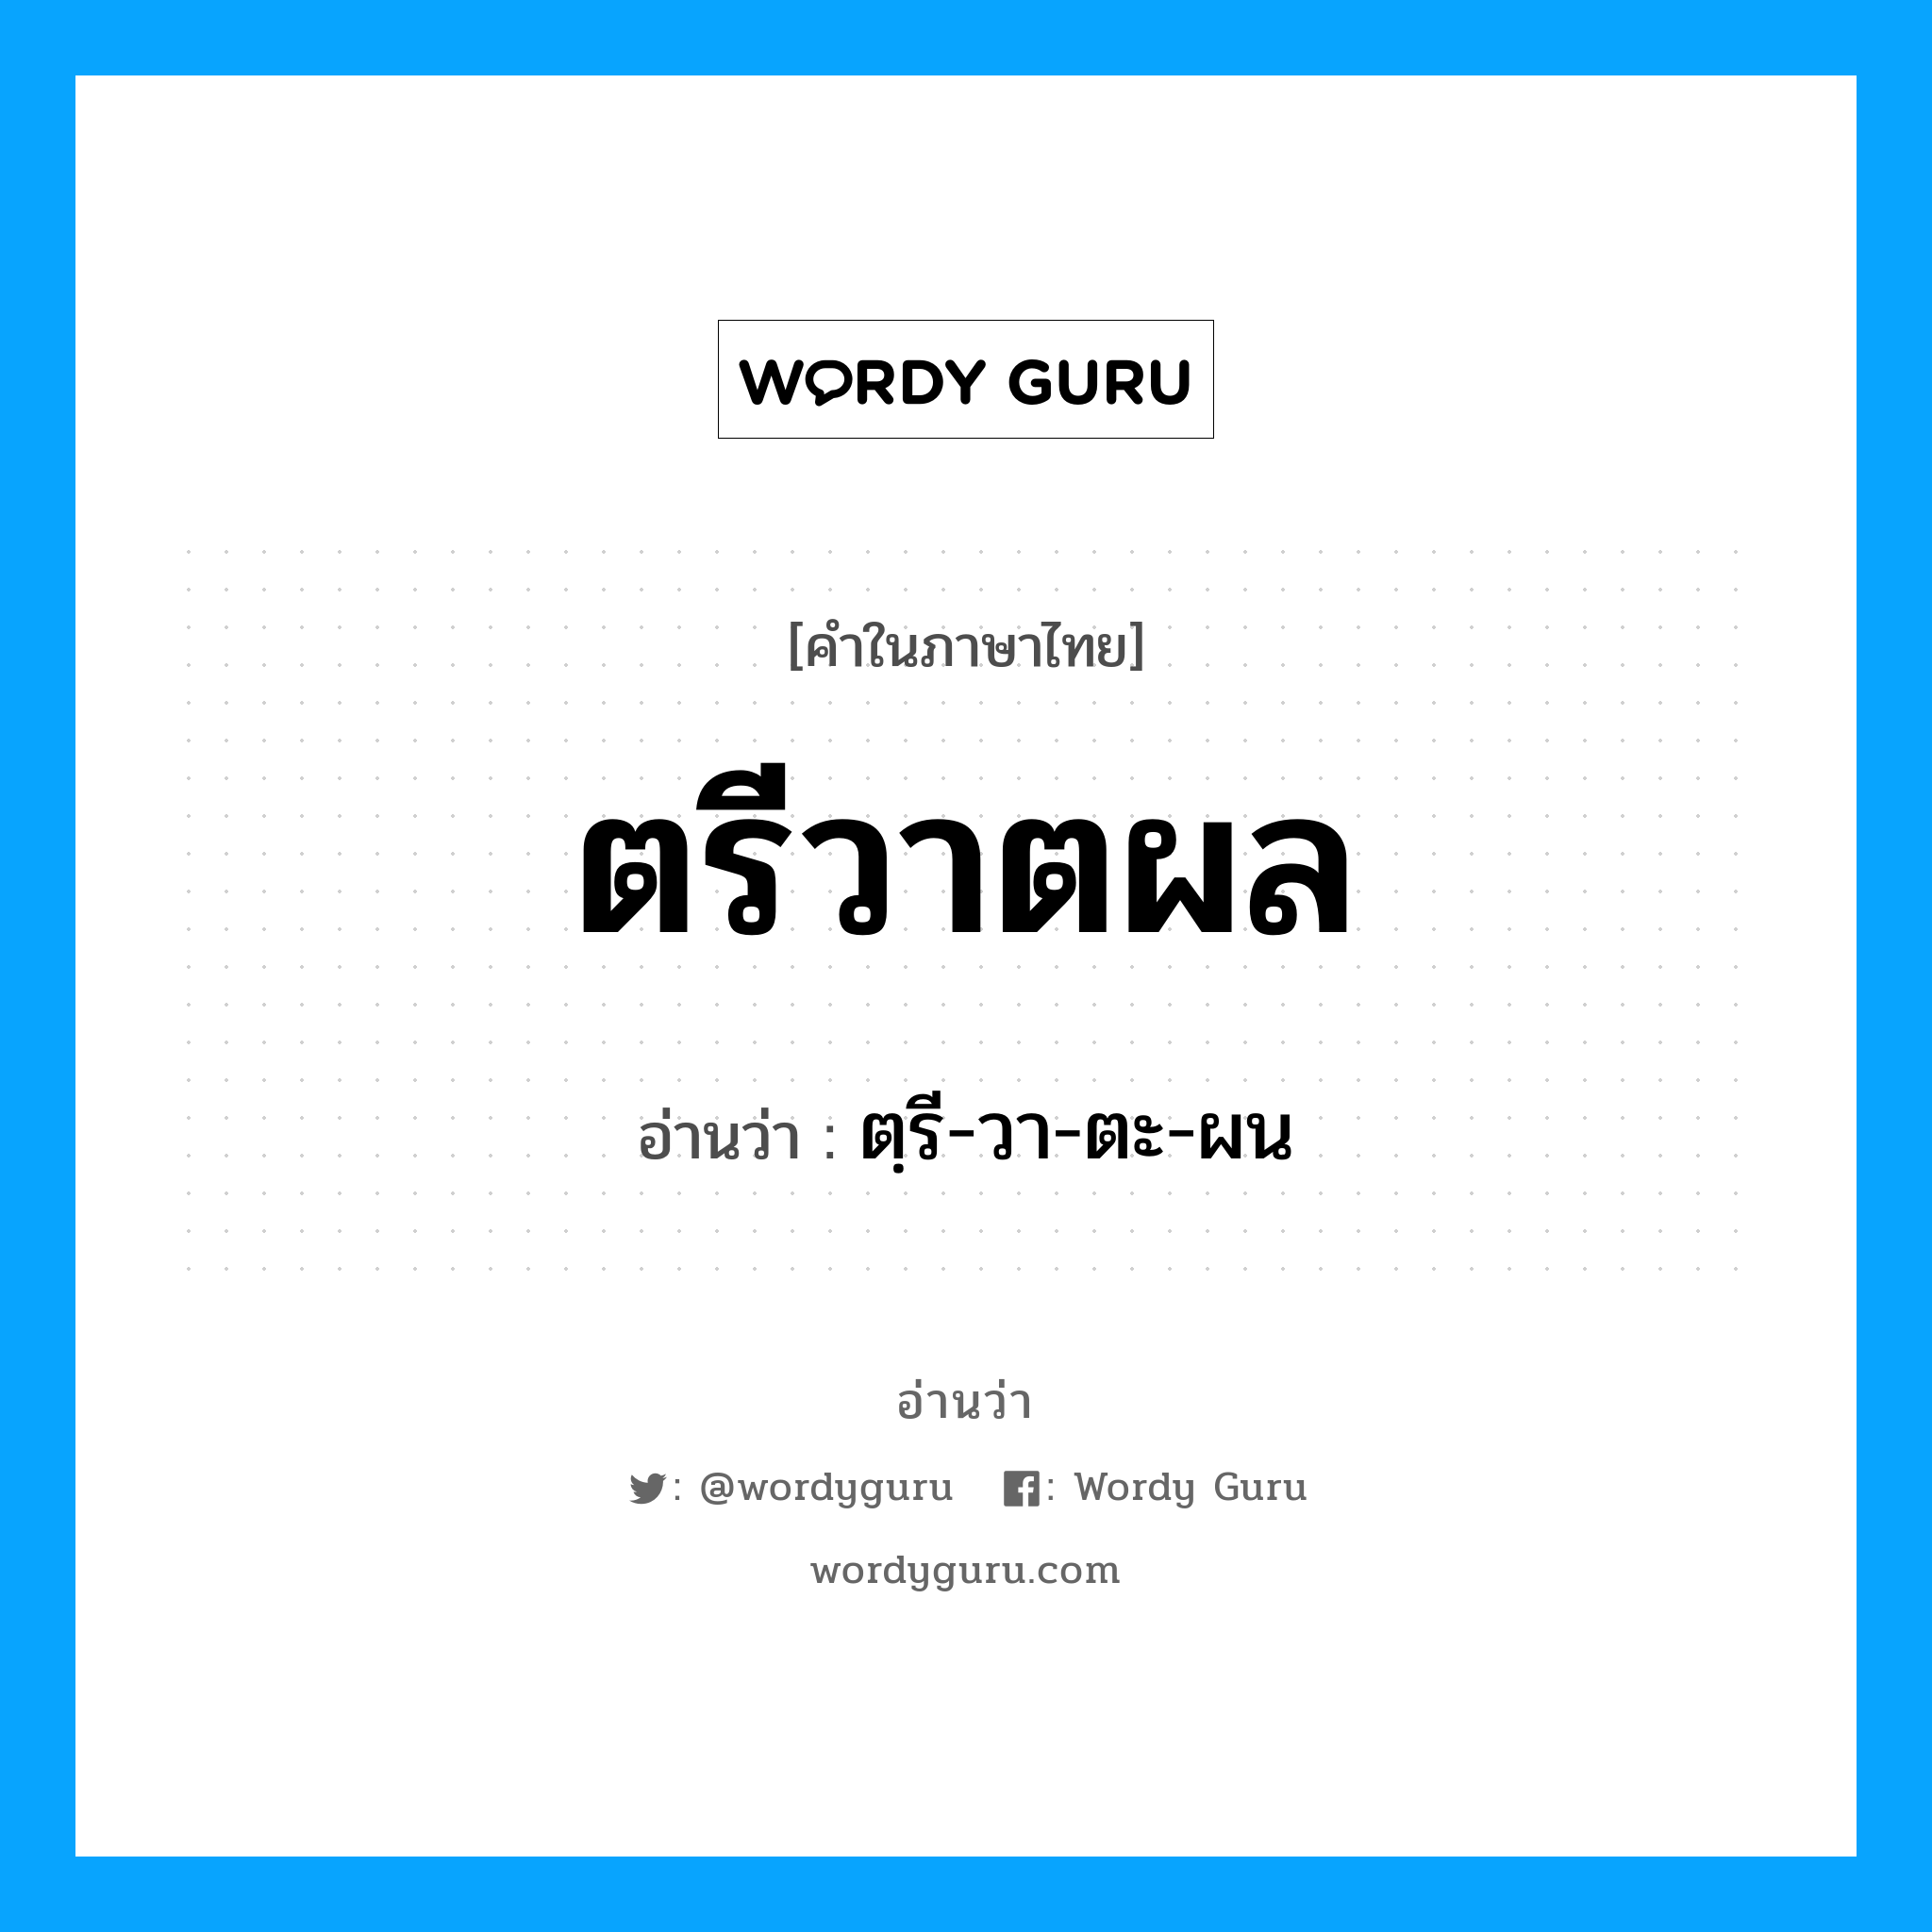 ตฺรี-วา-ตะ-ผน เป็นคำอ่านของคำไหน?, คำในภาษาไทย ตฺรี-วา-ตะ-ผน อ่านว่า ตรีวาตผล